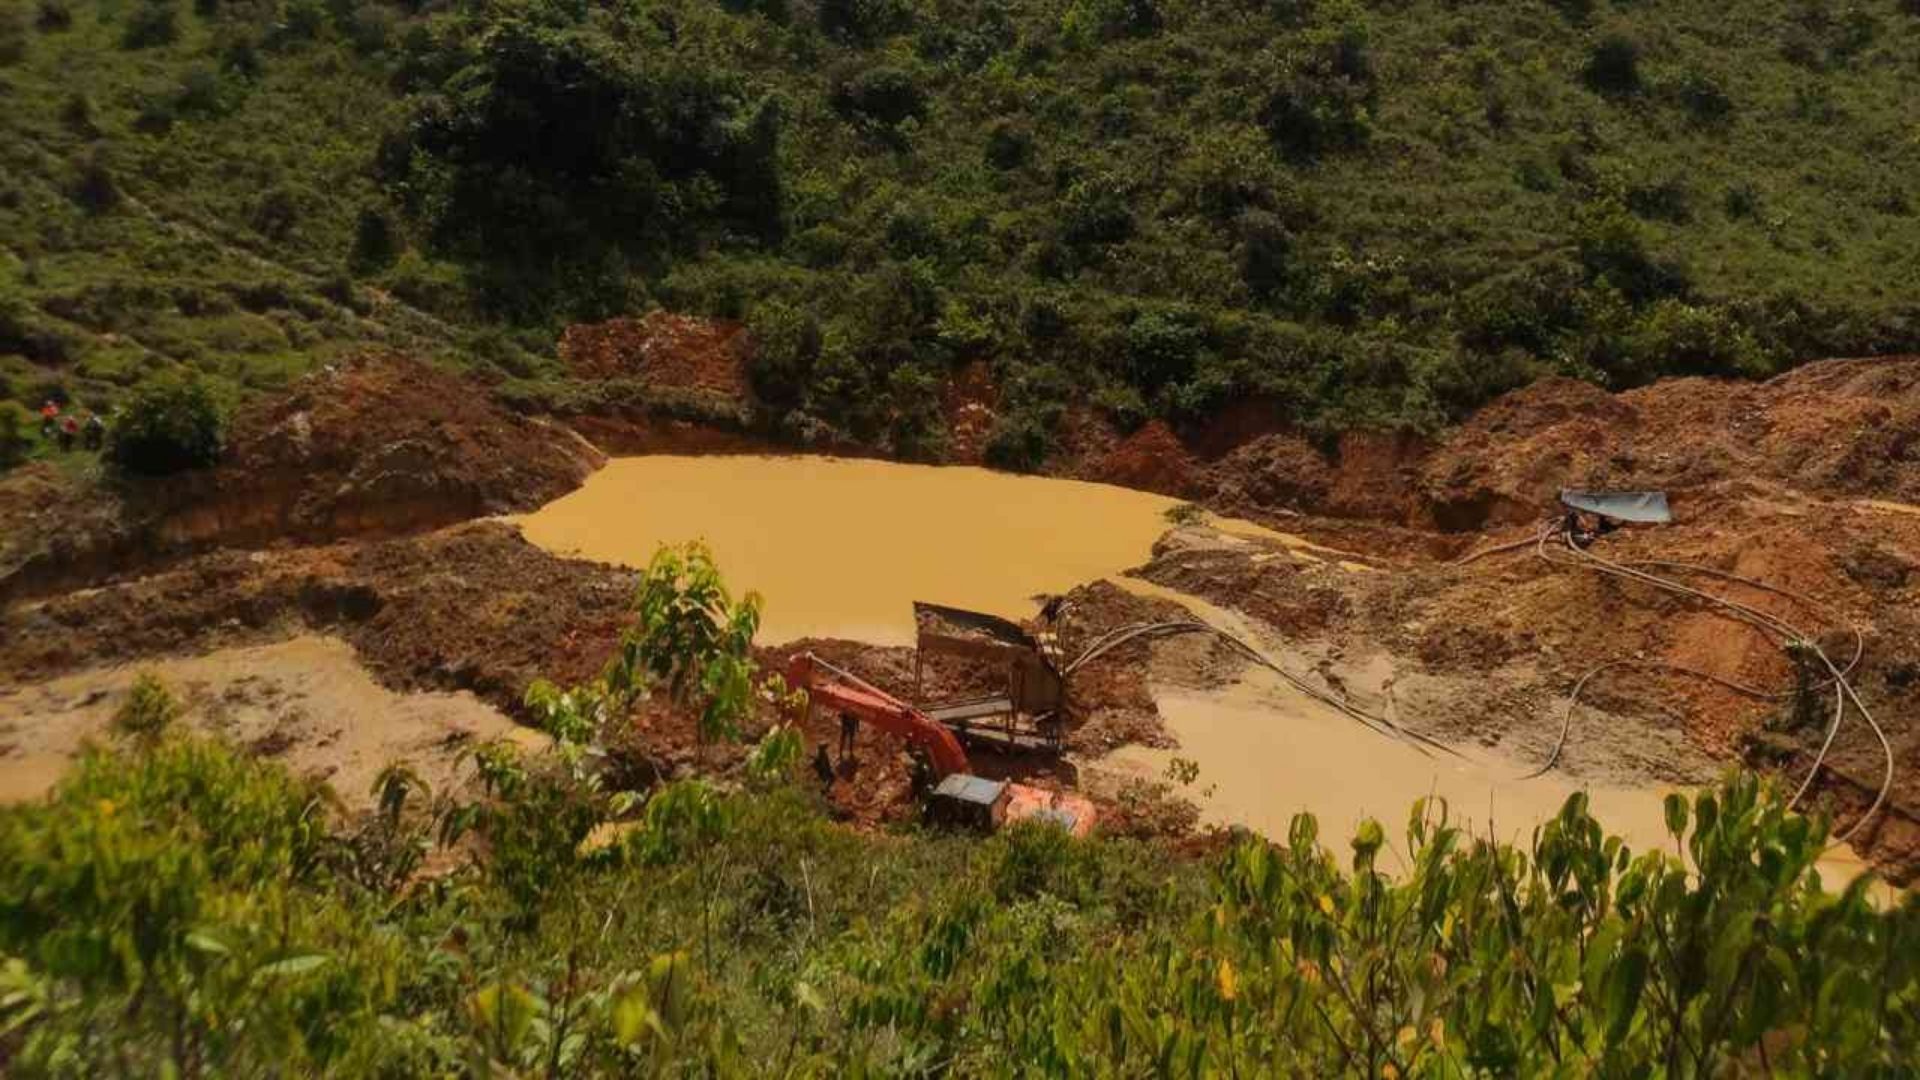 Según Global Forest Watch, en 2019 Antioquia perdió 27.0 kha de bosque natural, lo que equivale a 10.3Mt de CO₂ de emisiones. Foto: Ejército Nacional